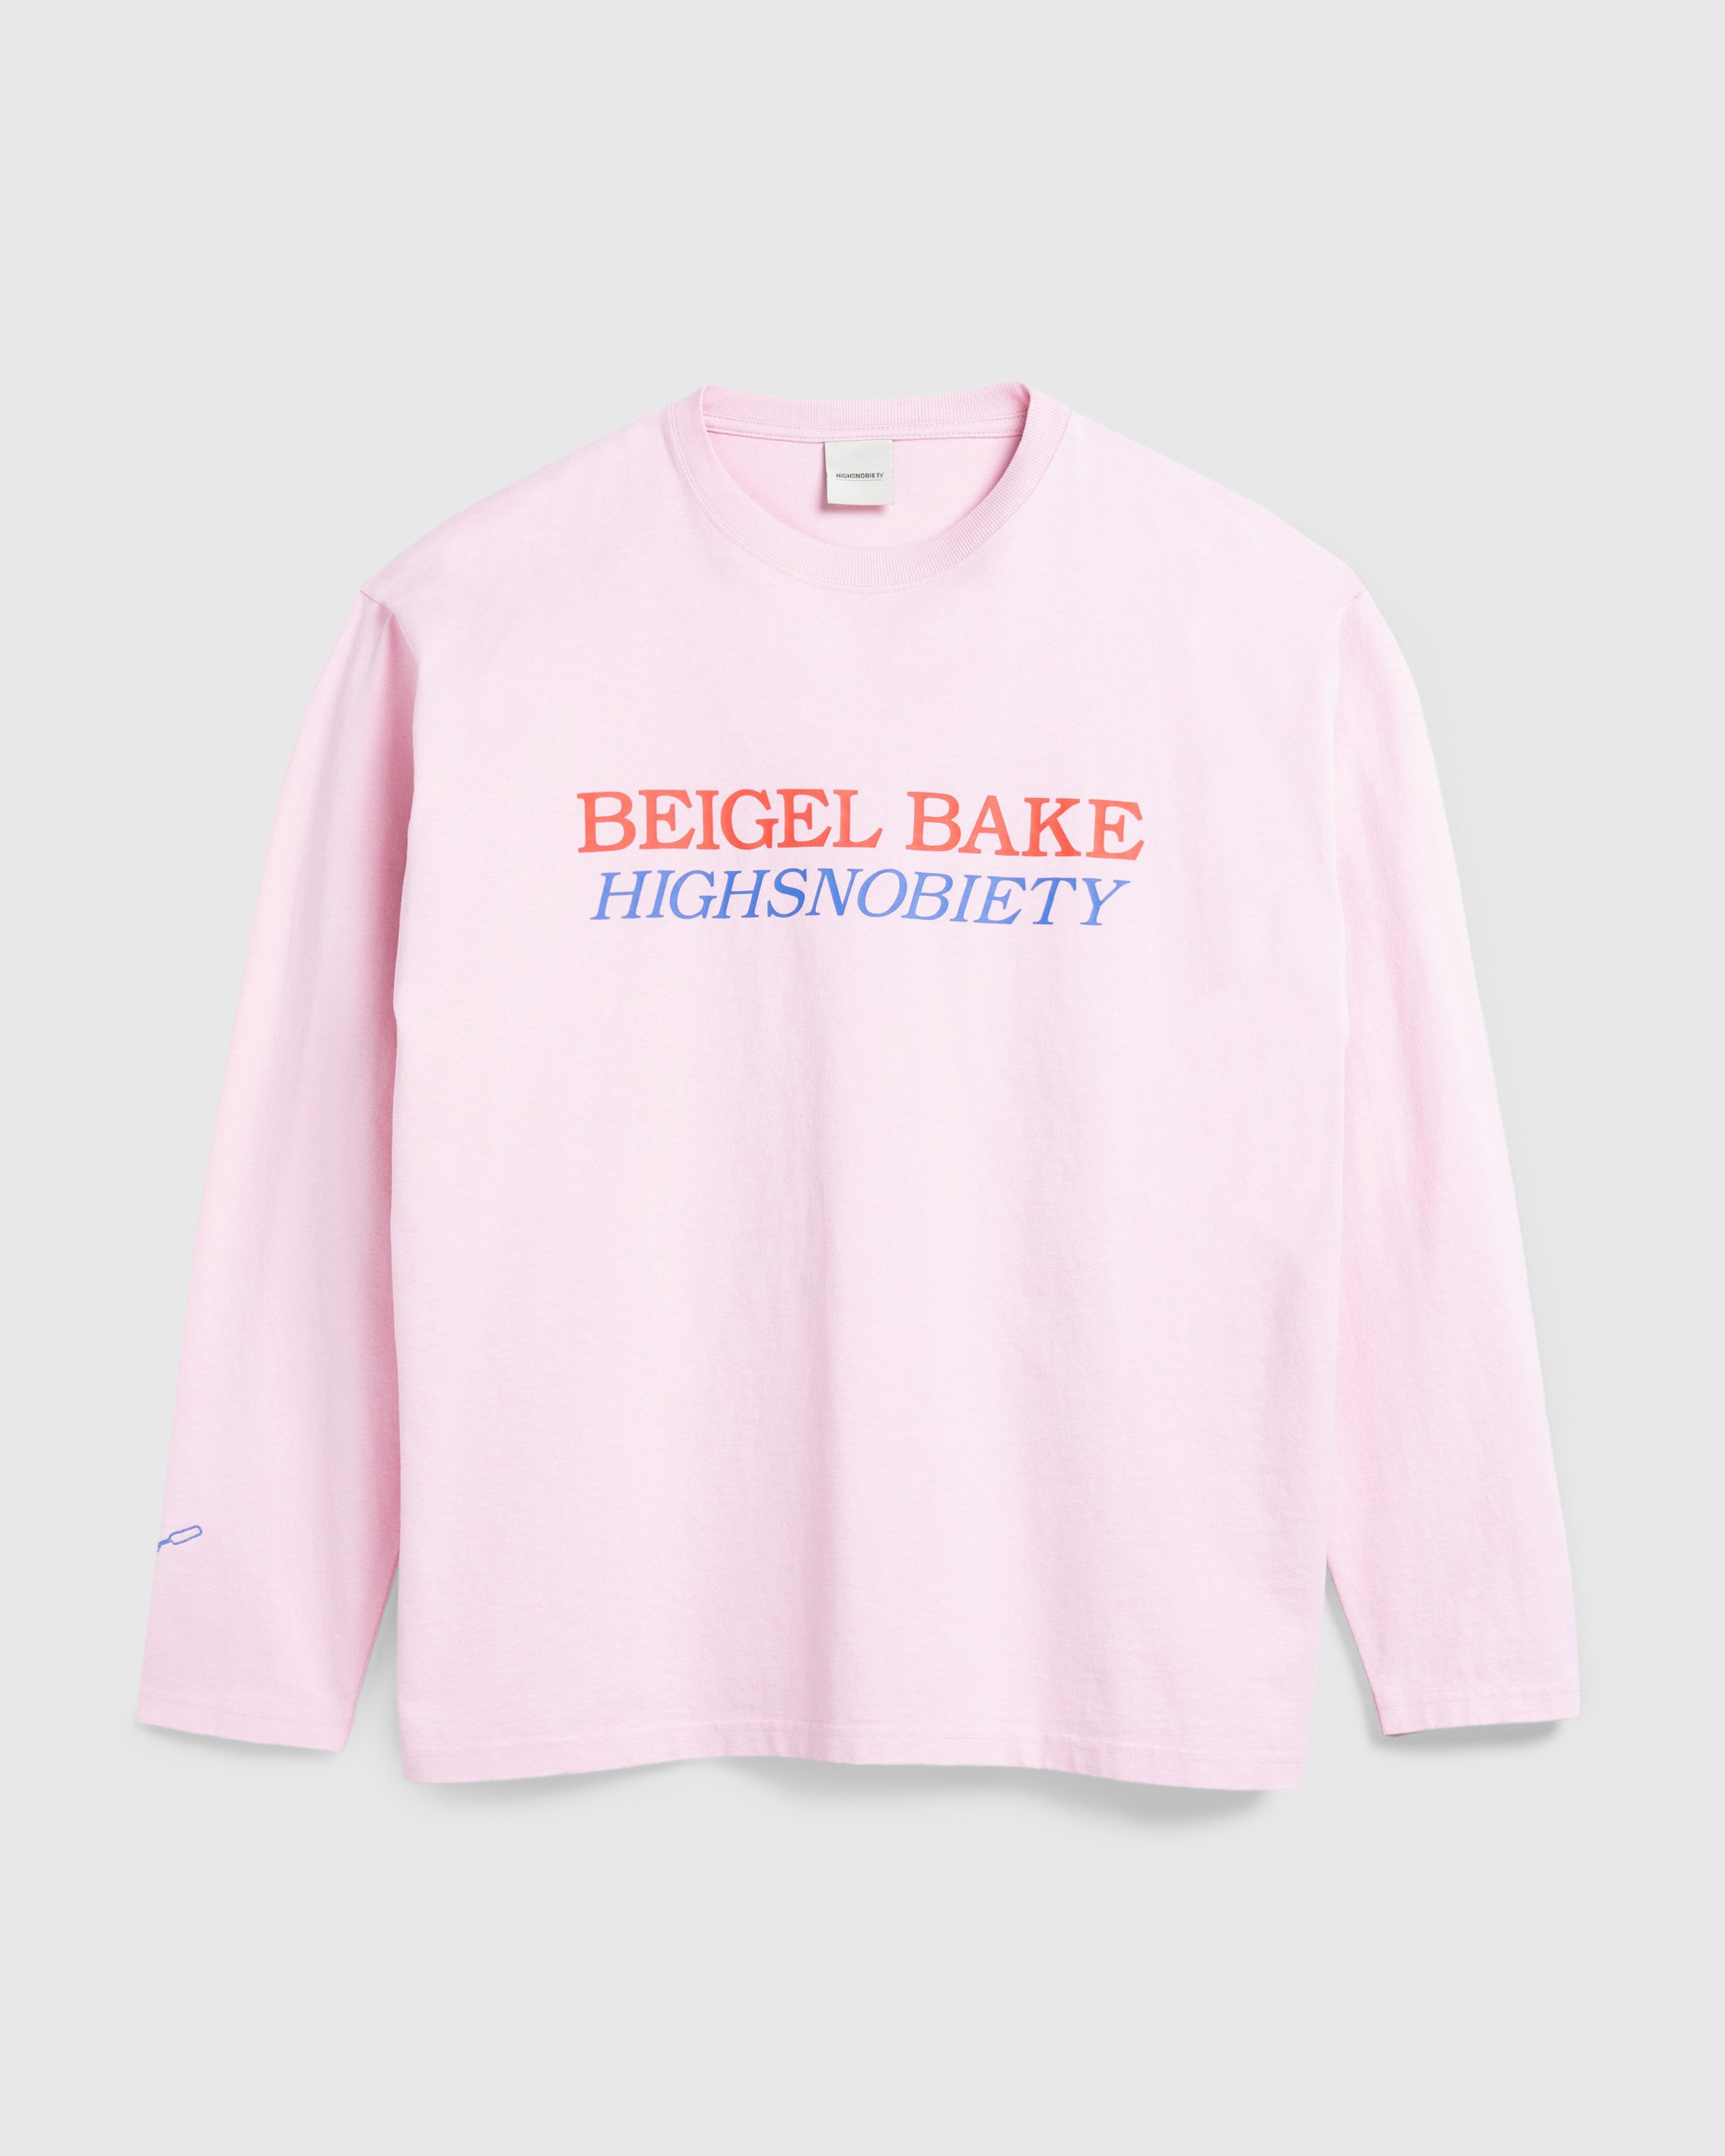 Beigel Bake x Highsnobiety - Pink Long Sleeves Tee - Clothing -  - Image 1